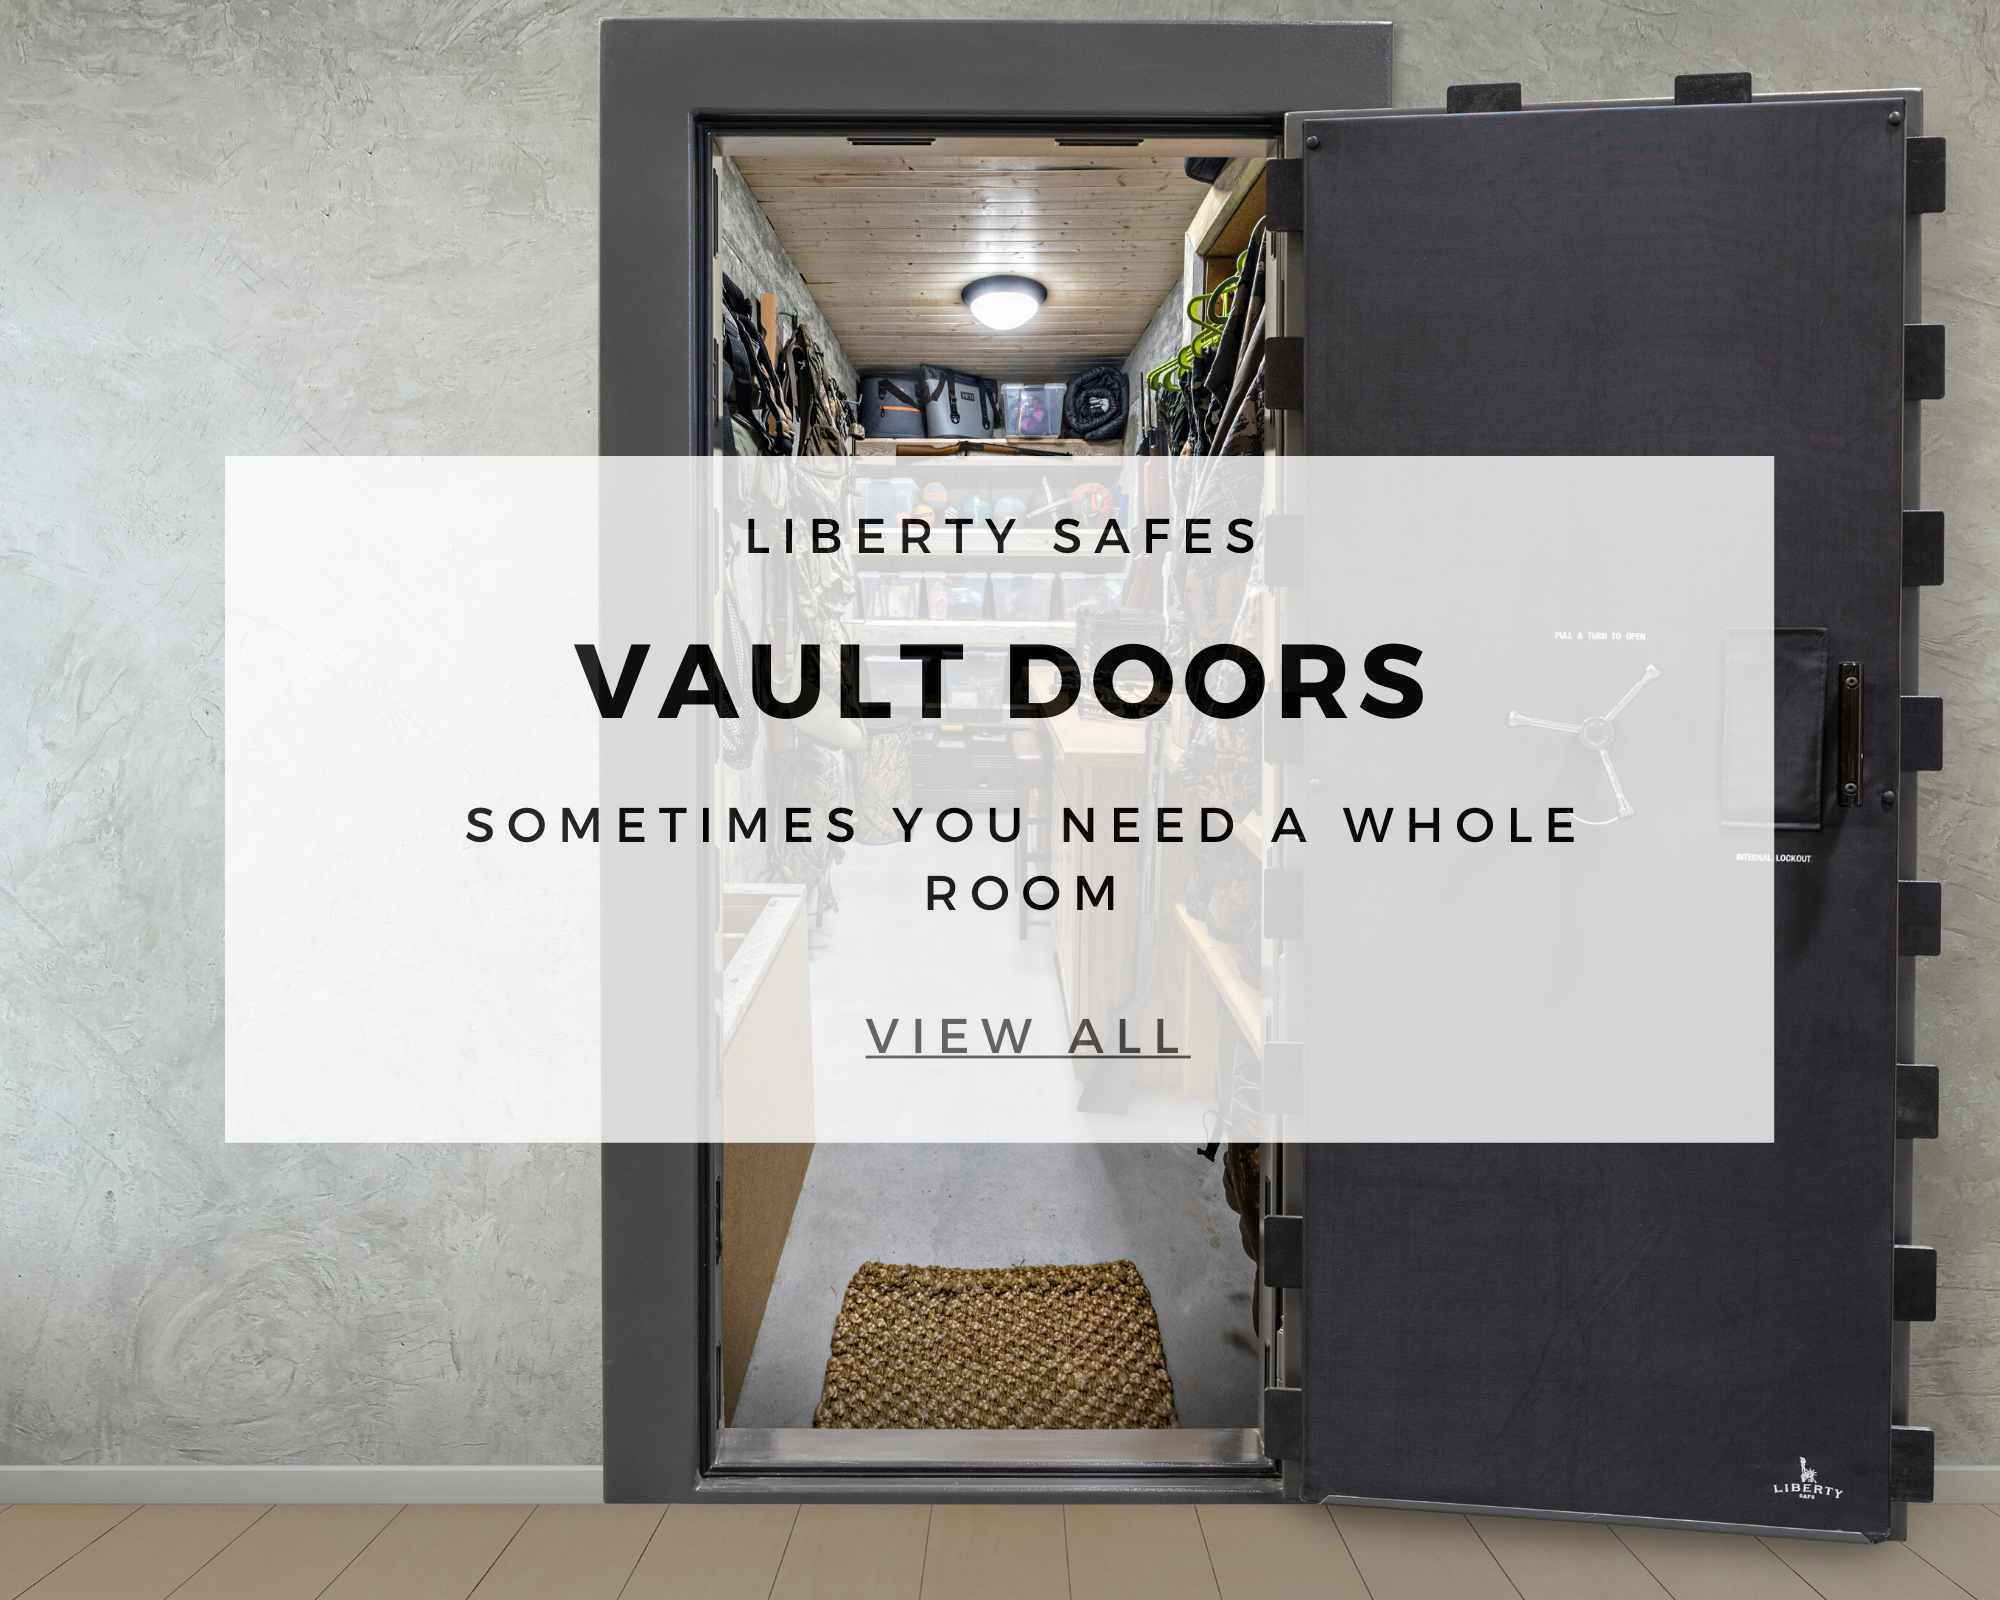 Liberty vault door referencing all Liberty vault doors